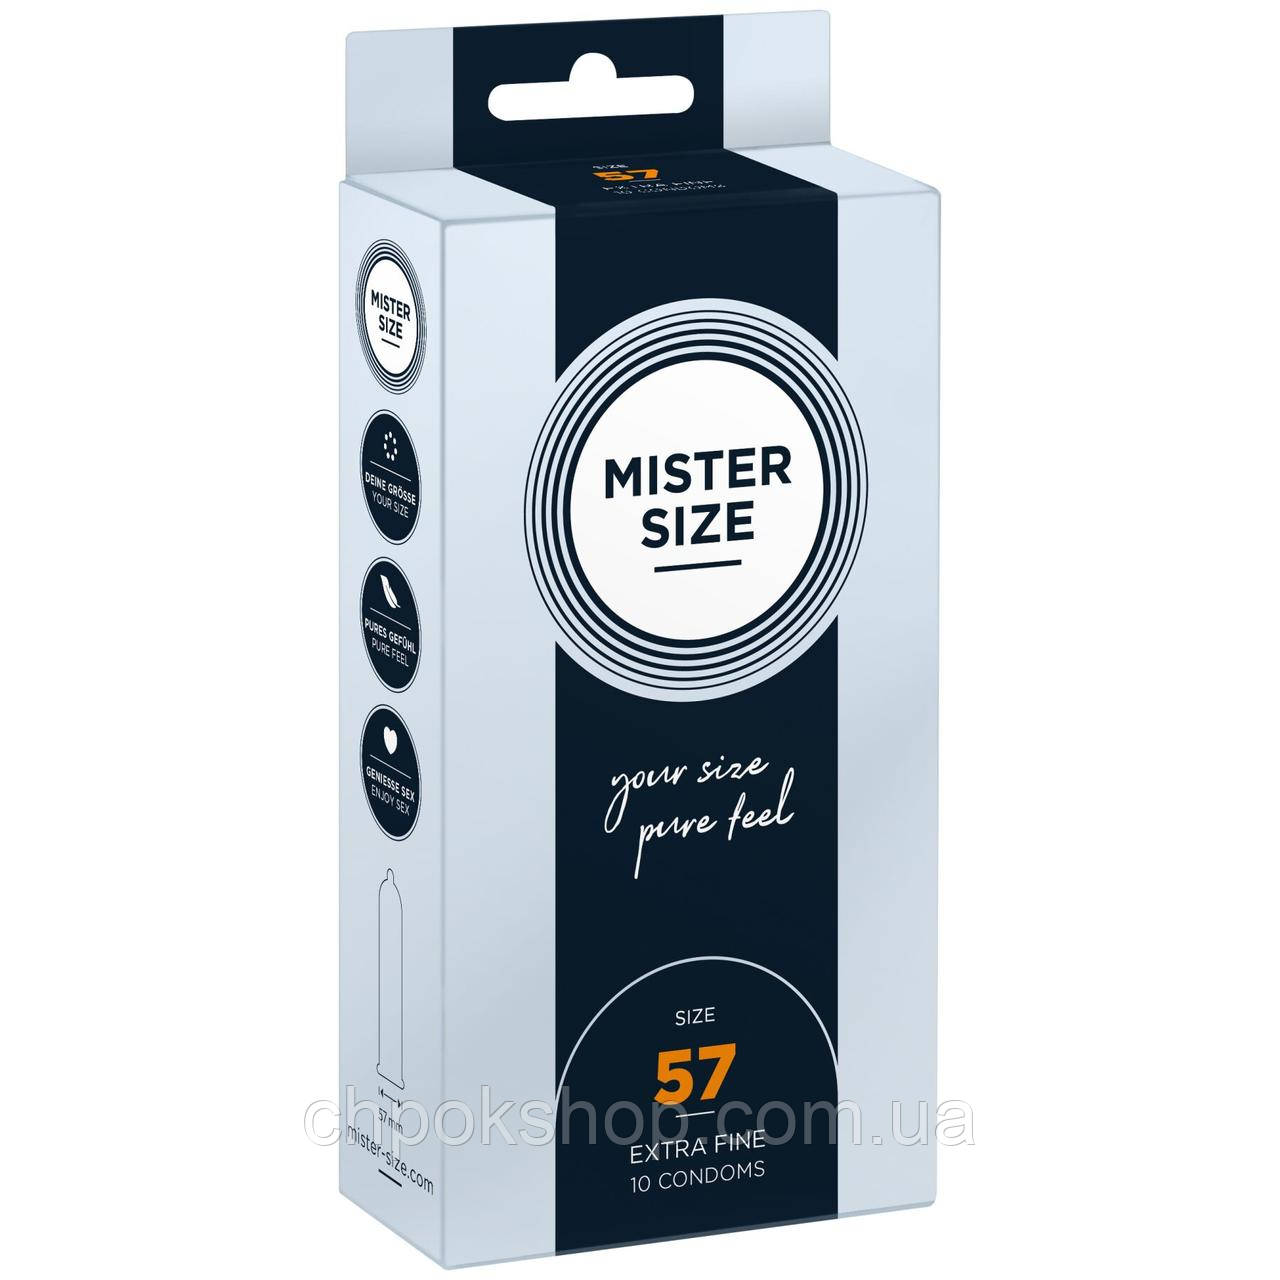 Презервативи Mister Size — pure feel — 57 (10 condoms), товщина 0,05 мм